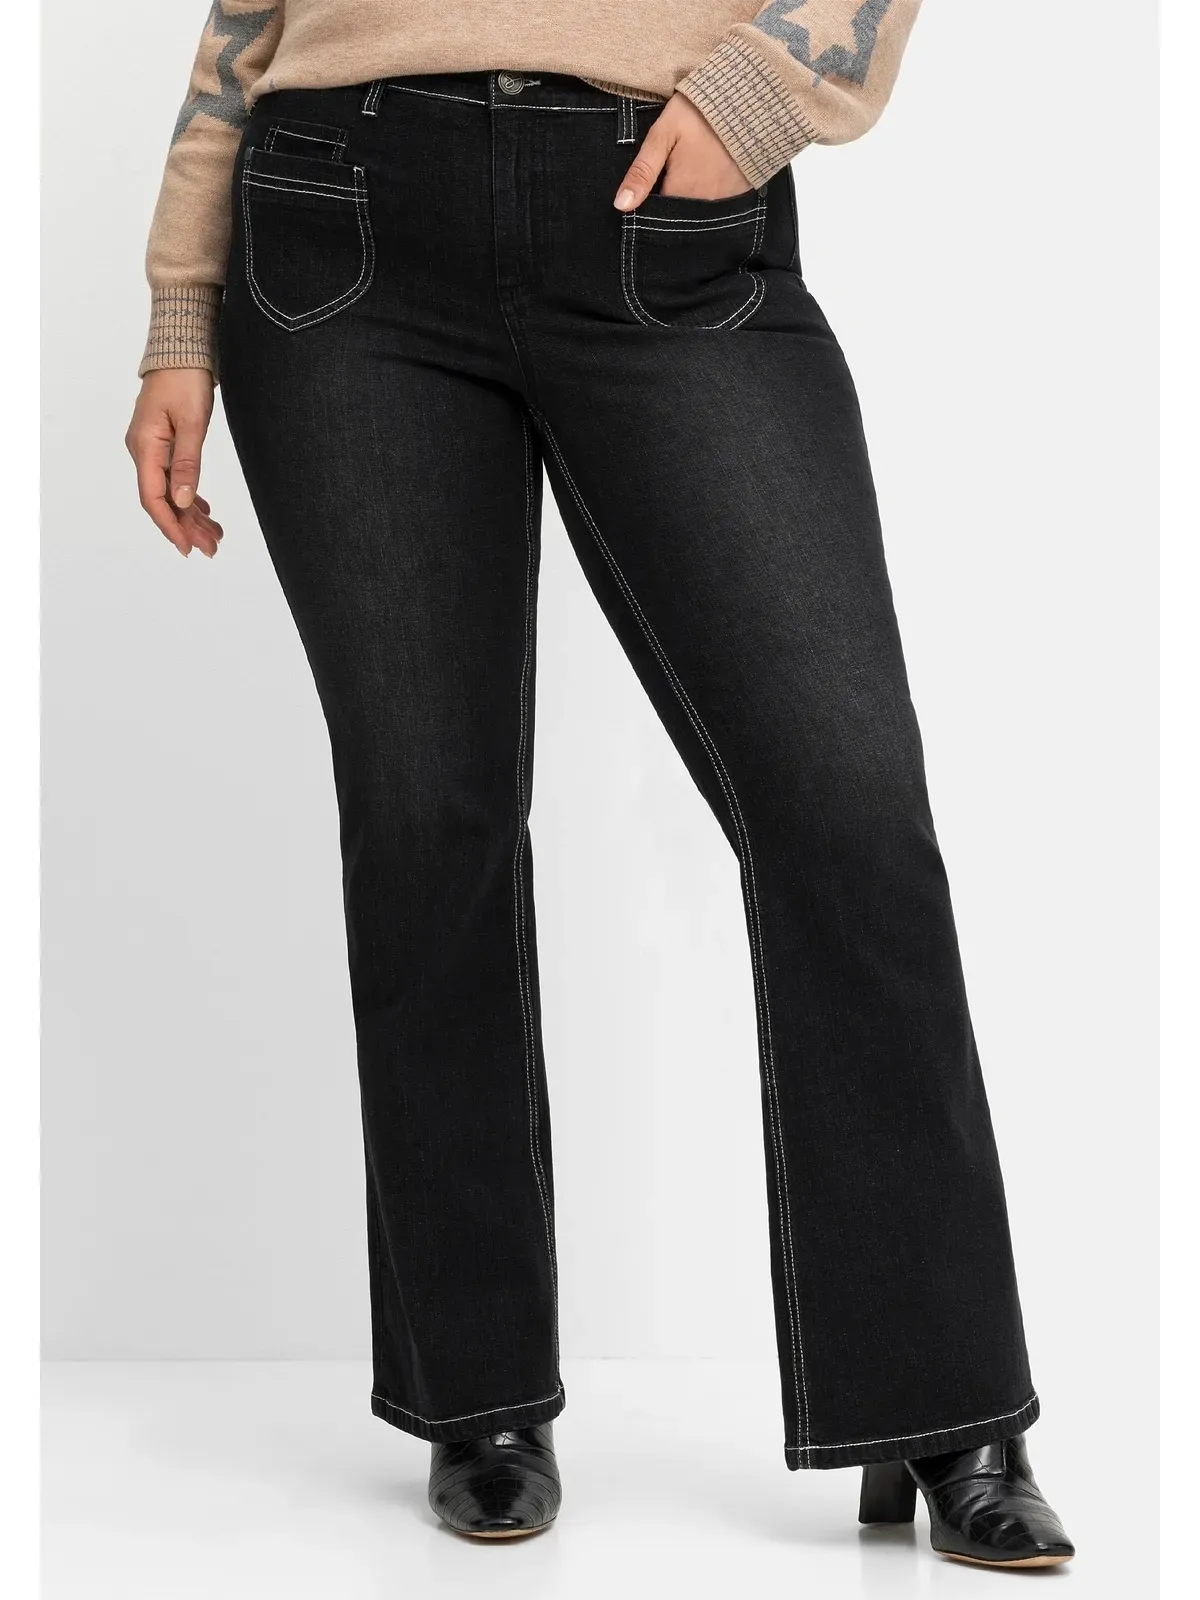 Bootcut-Jeans SHEEGO "Große Größen" Gr. 48, Normalgrößen, schwarz (black denim) Damen Jeans Bootcut